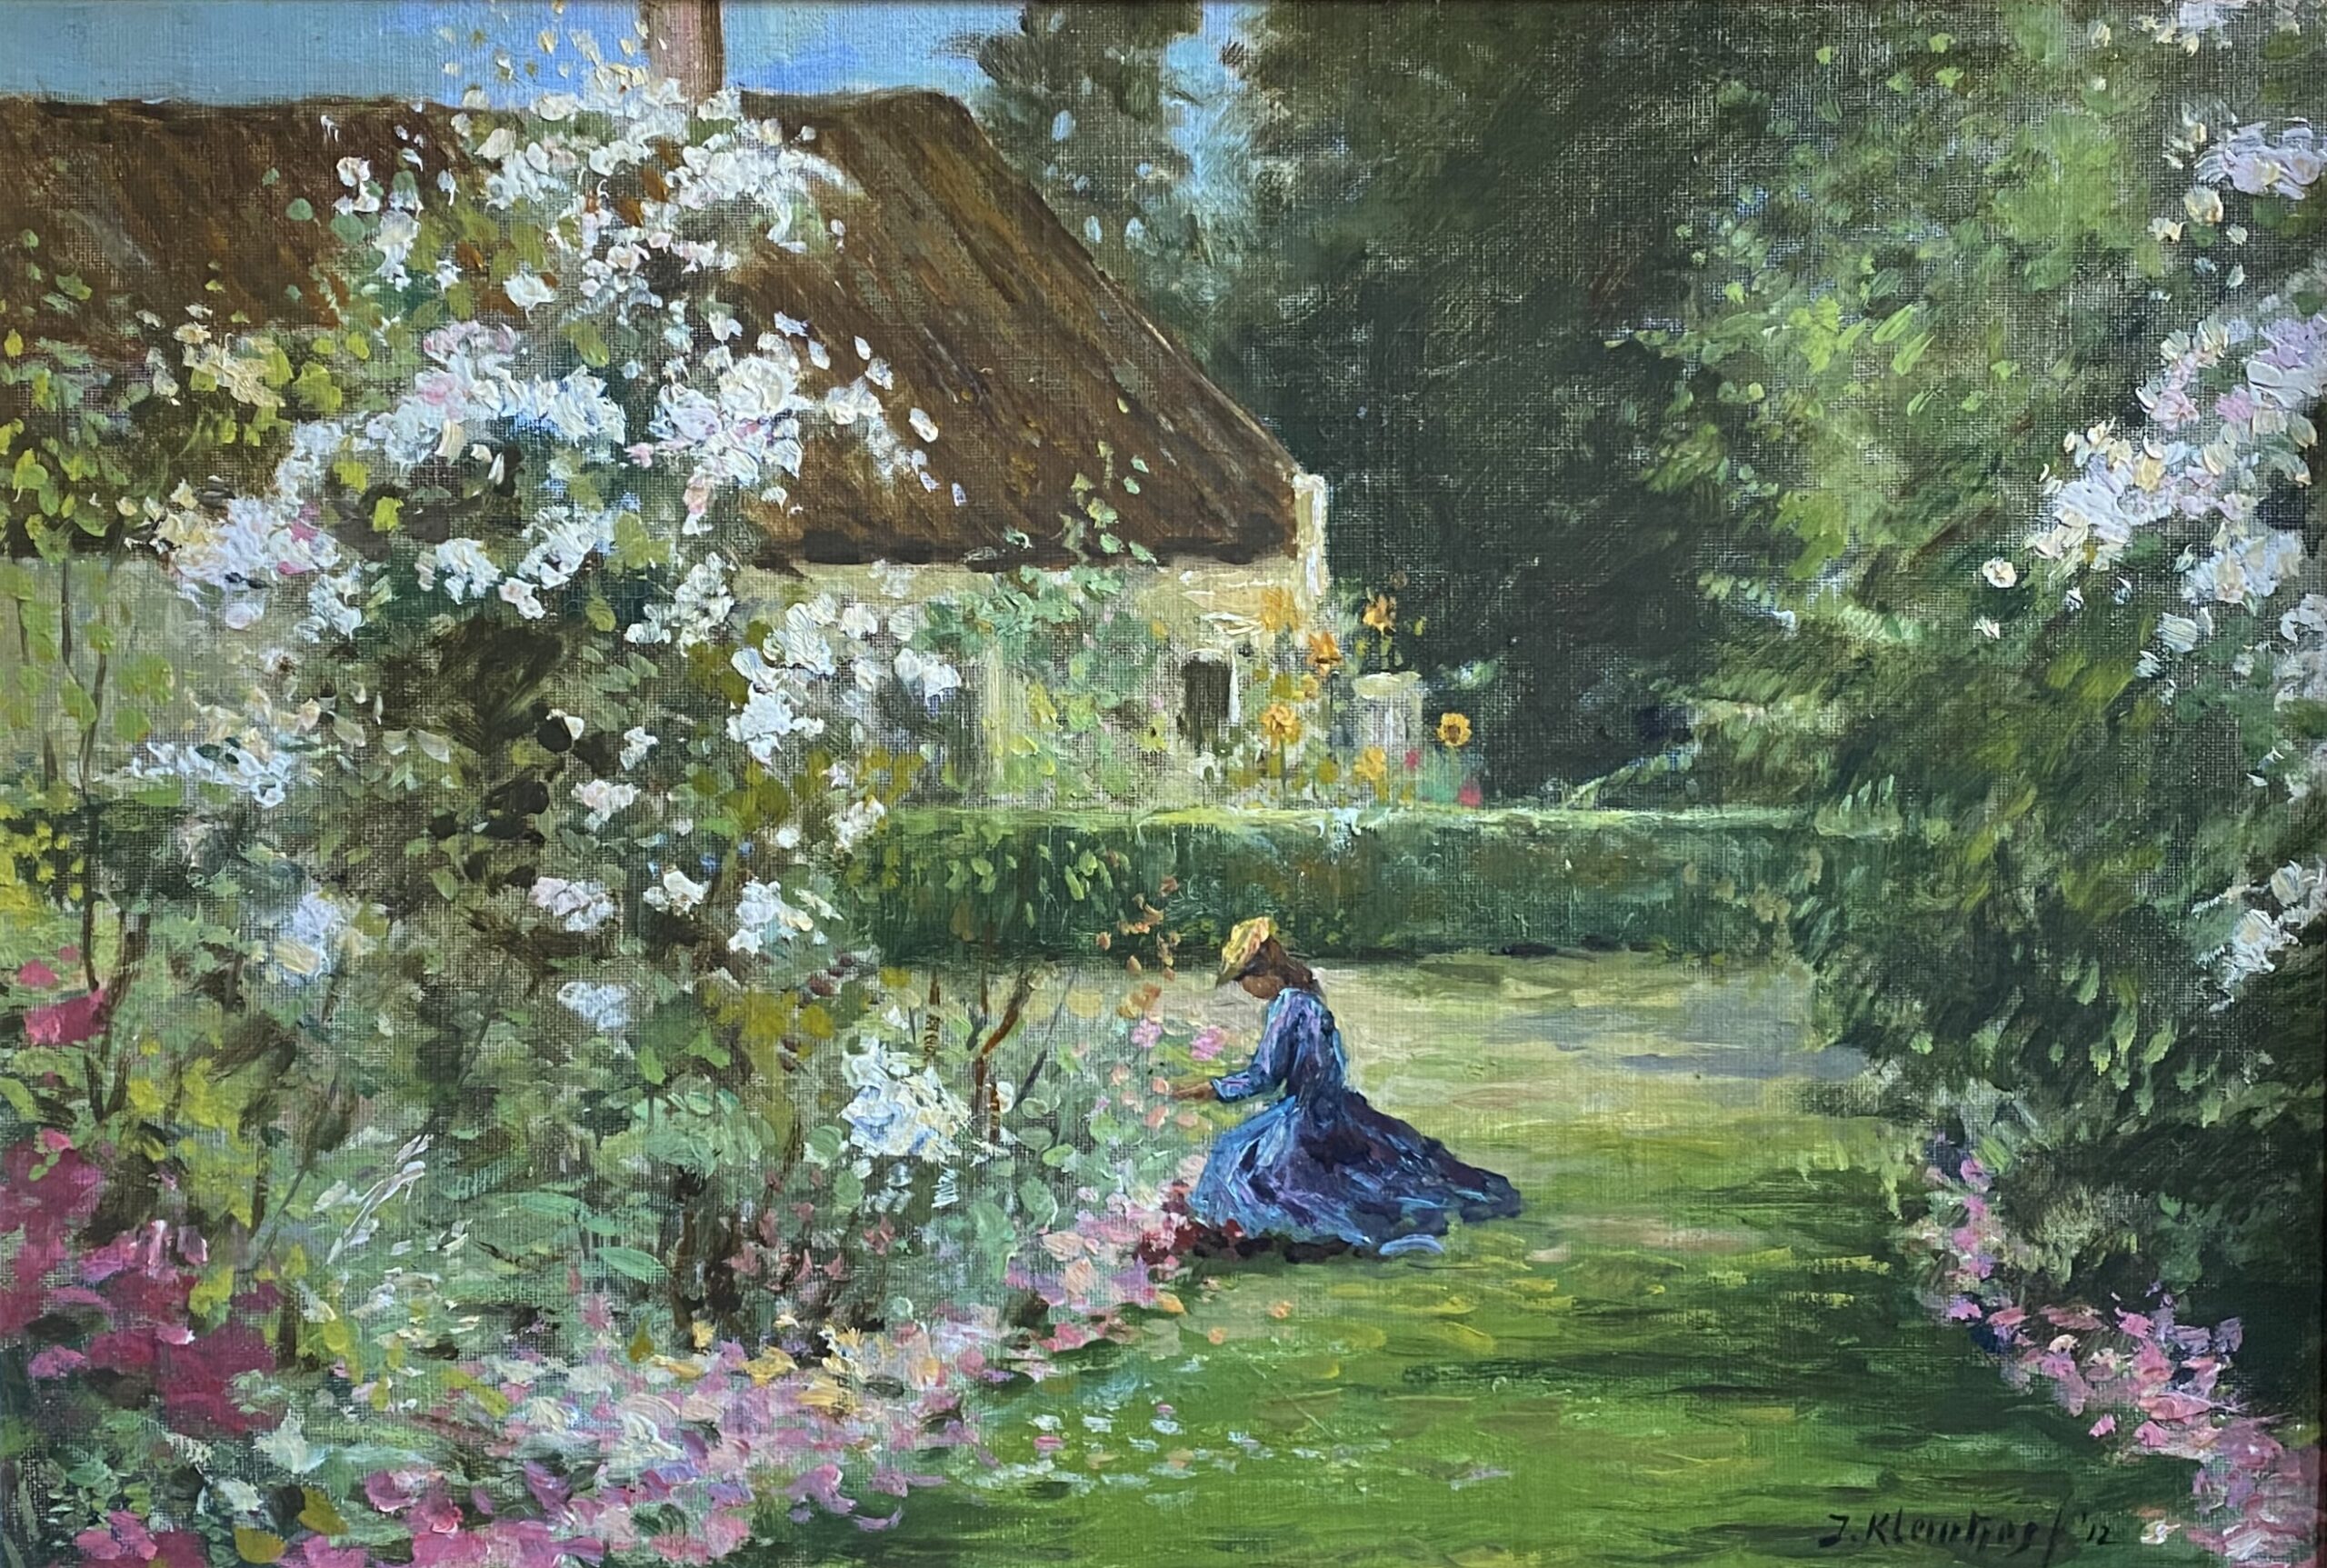 Meisje dat tuiniert (1912)